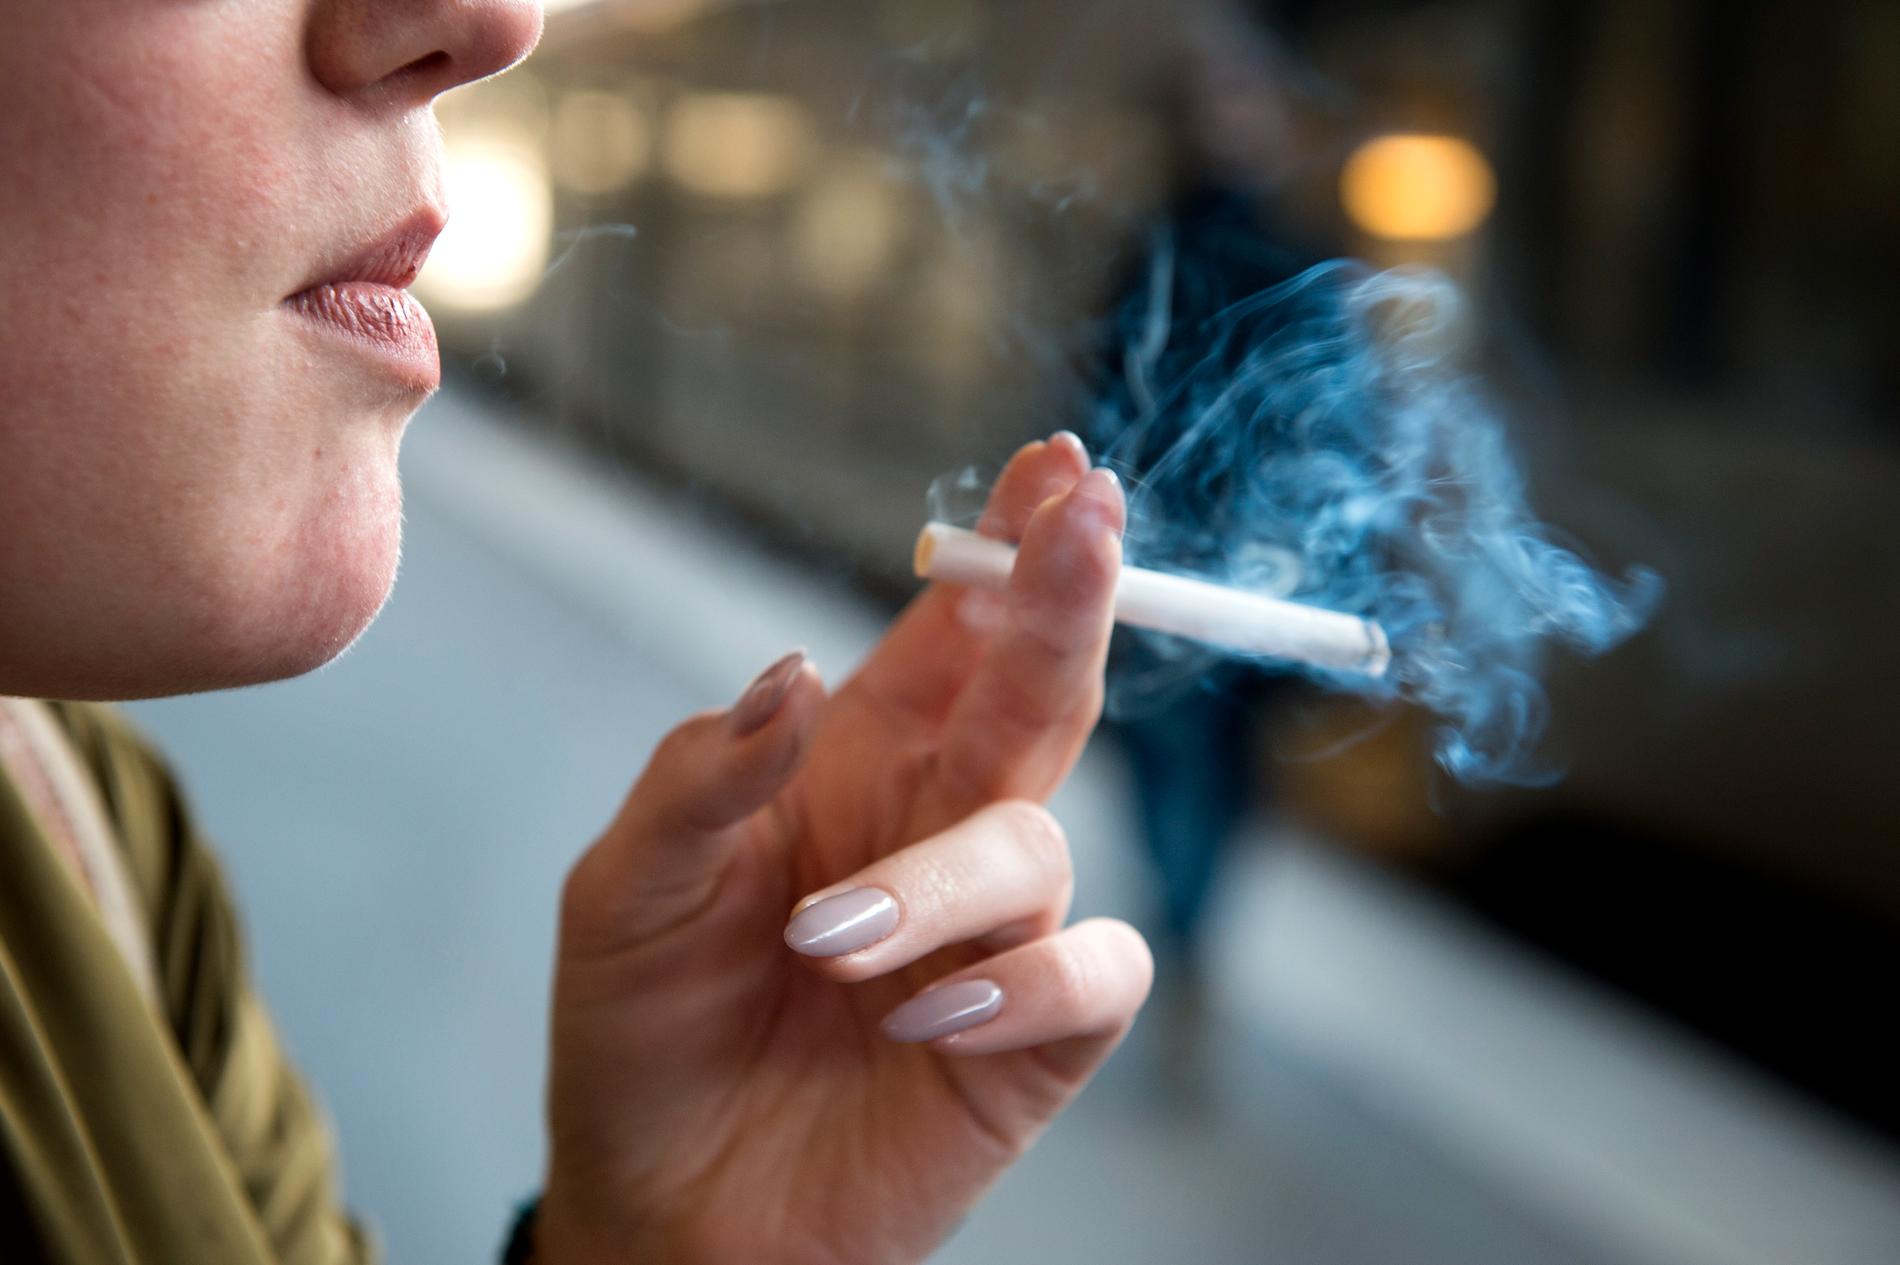 Den svenska regeringen vill, liksom många andra länder, införa hårdare regler för cigarettrökning. Men det hindrar inte de stora tobaksföretagen att exploatera andra marknader.